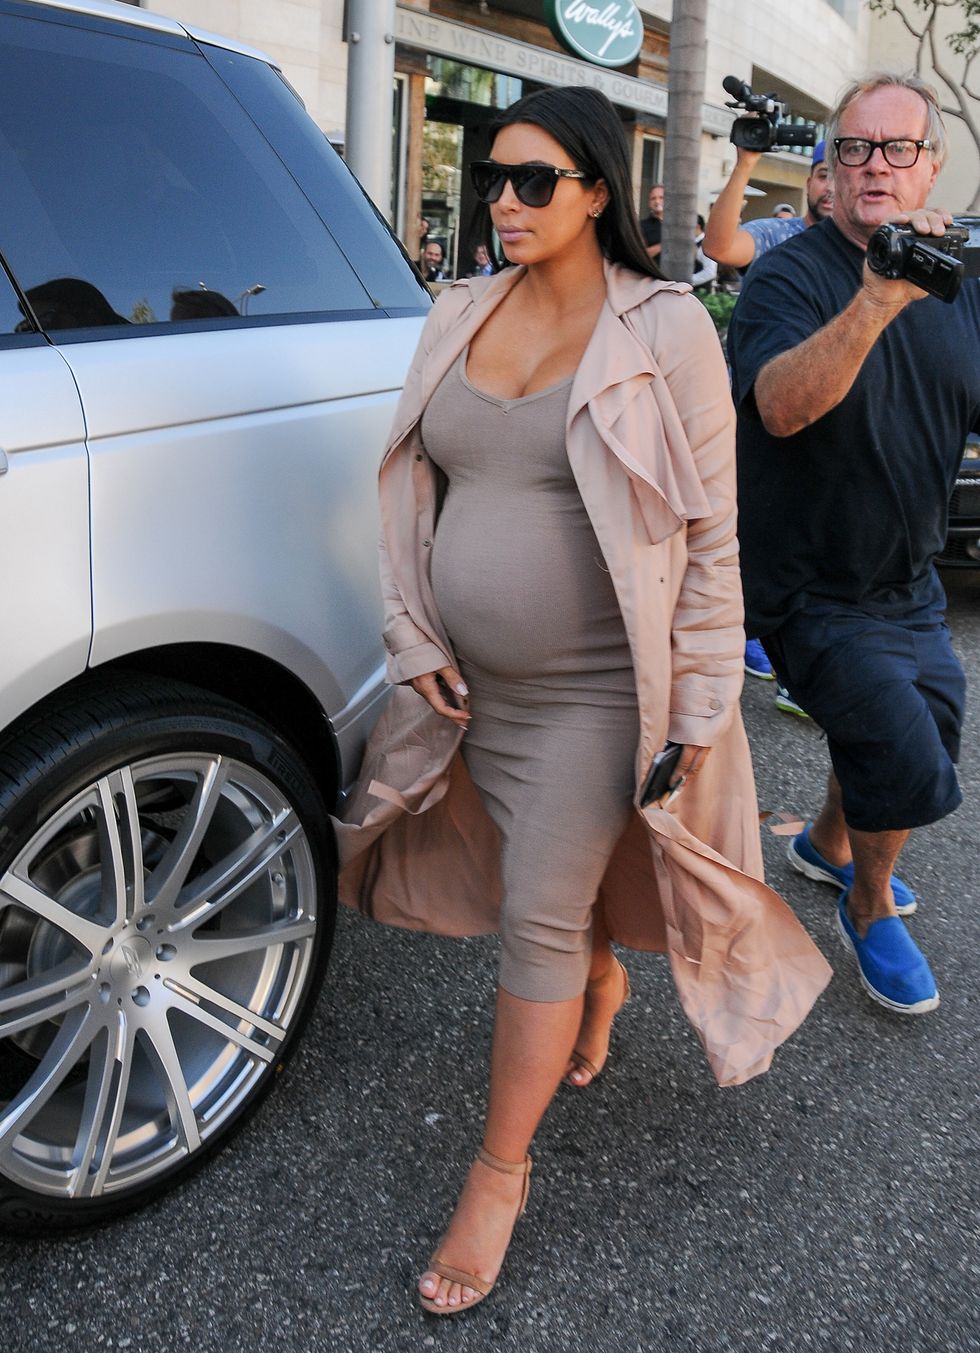 Beyoncé e Kim Kardashian hanno davvero qualcosa in comune: il senso dello stile quando sono incinta: sarà colpa dell'esplosione di tutte quelle curve?